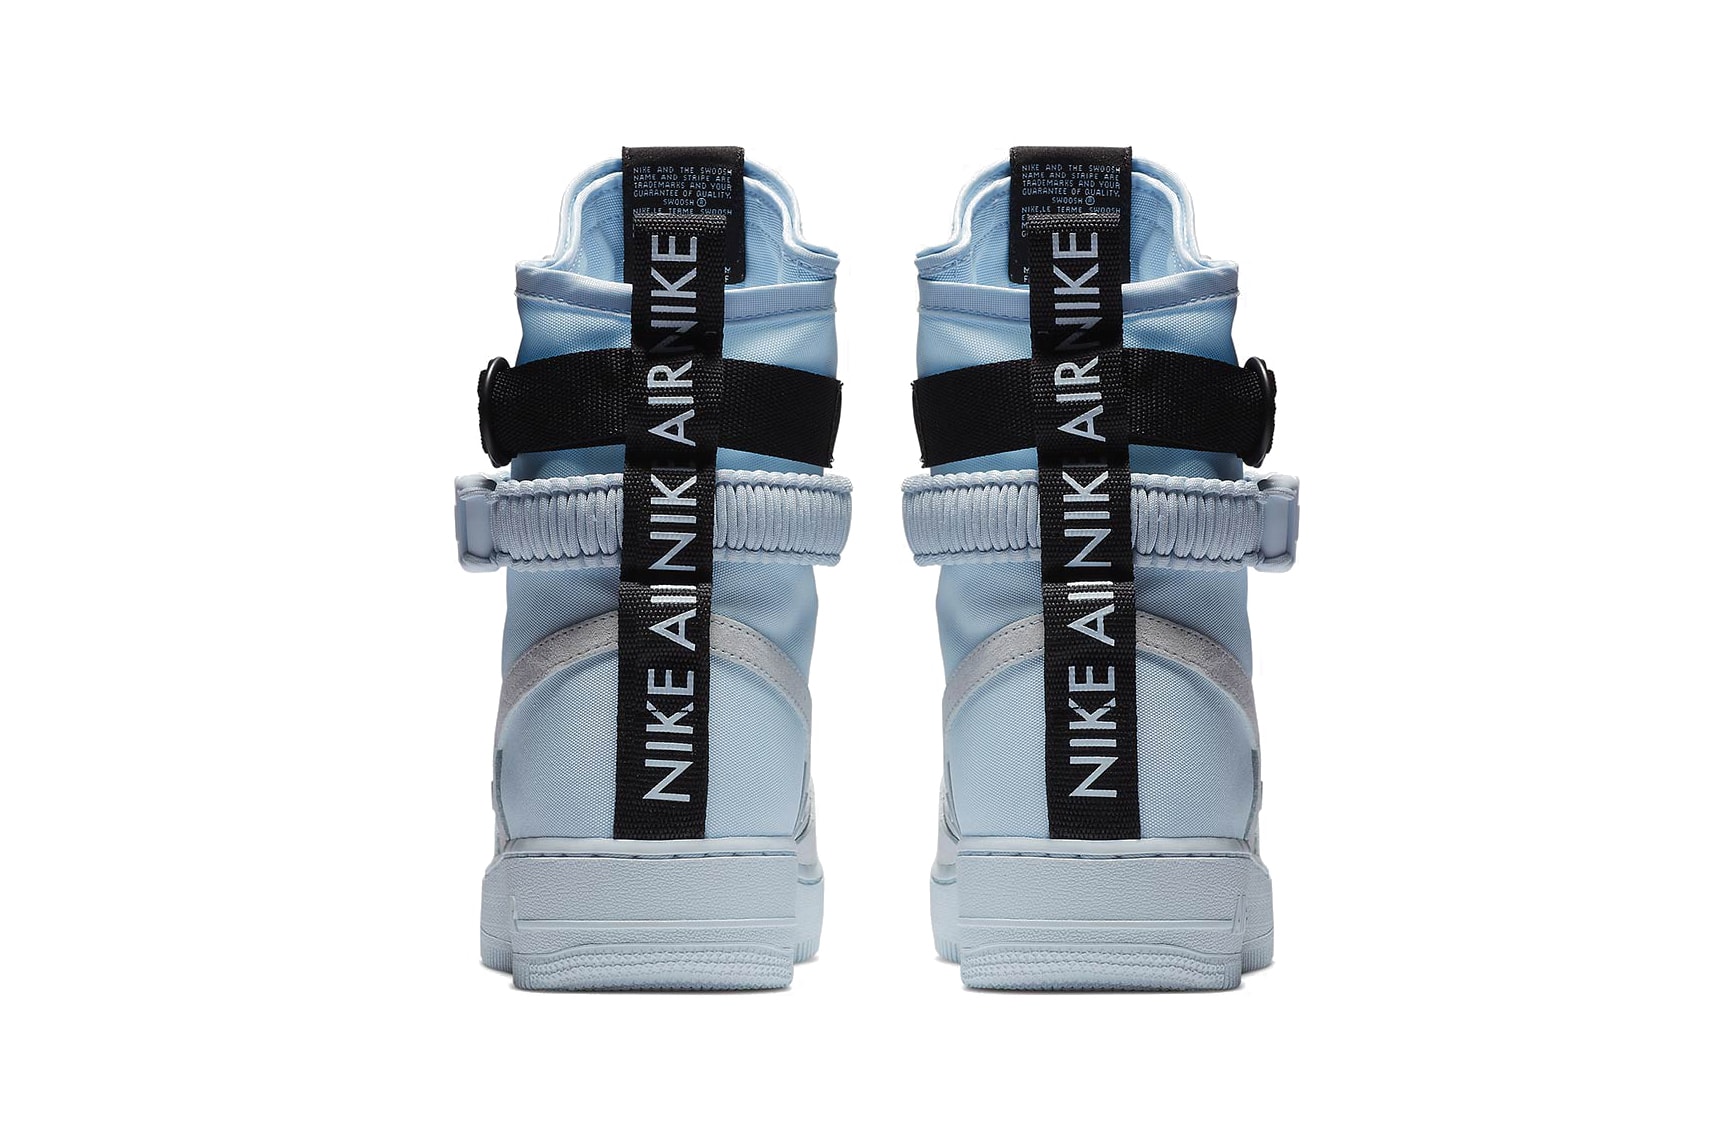 Nike Nike SF-AF1 "Blue Hint" Military Sneaker